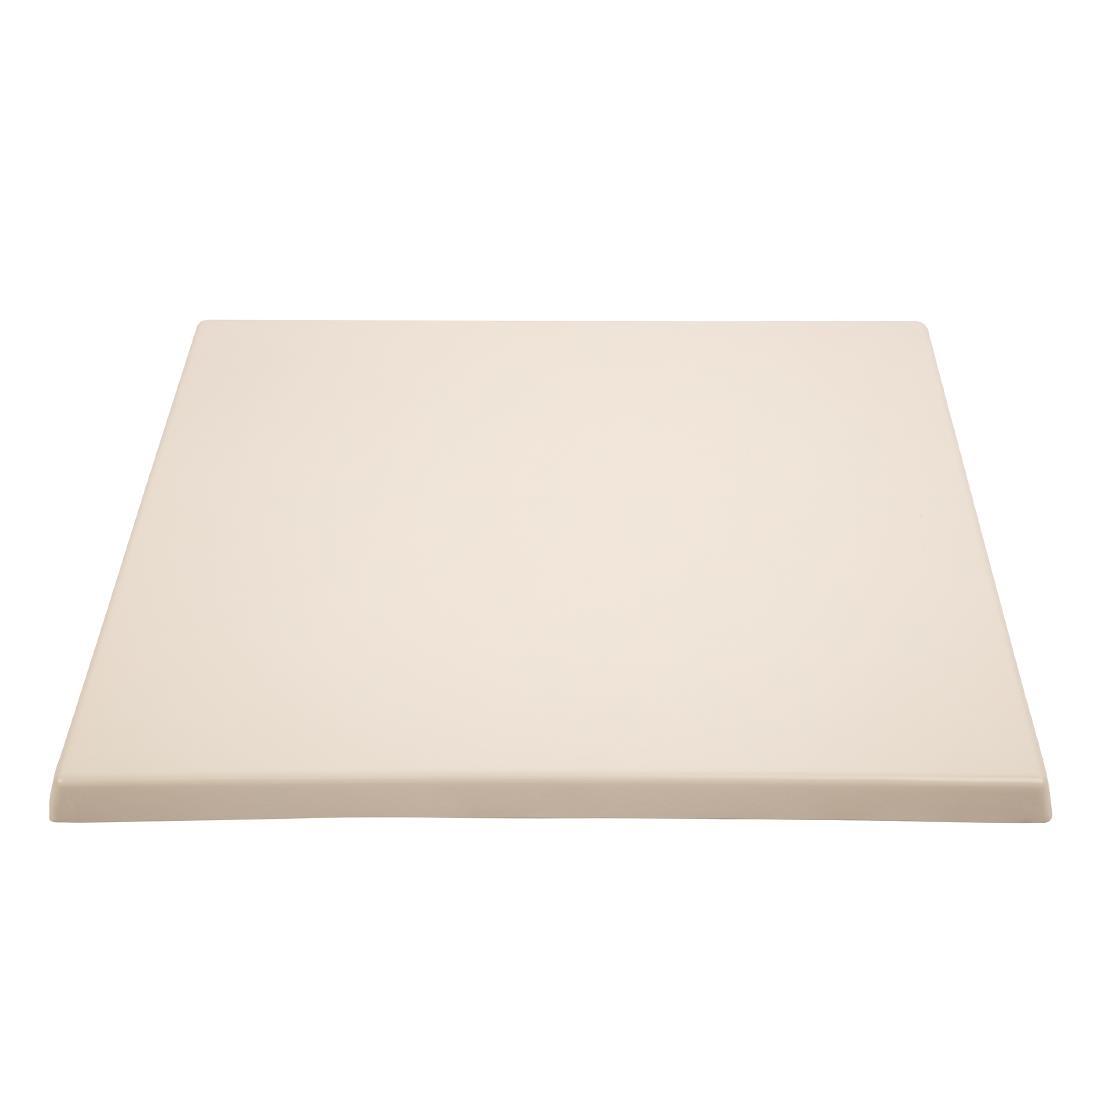 Bolero Pre-drilled Square Table Top White 600mm - GG637  - 2